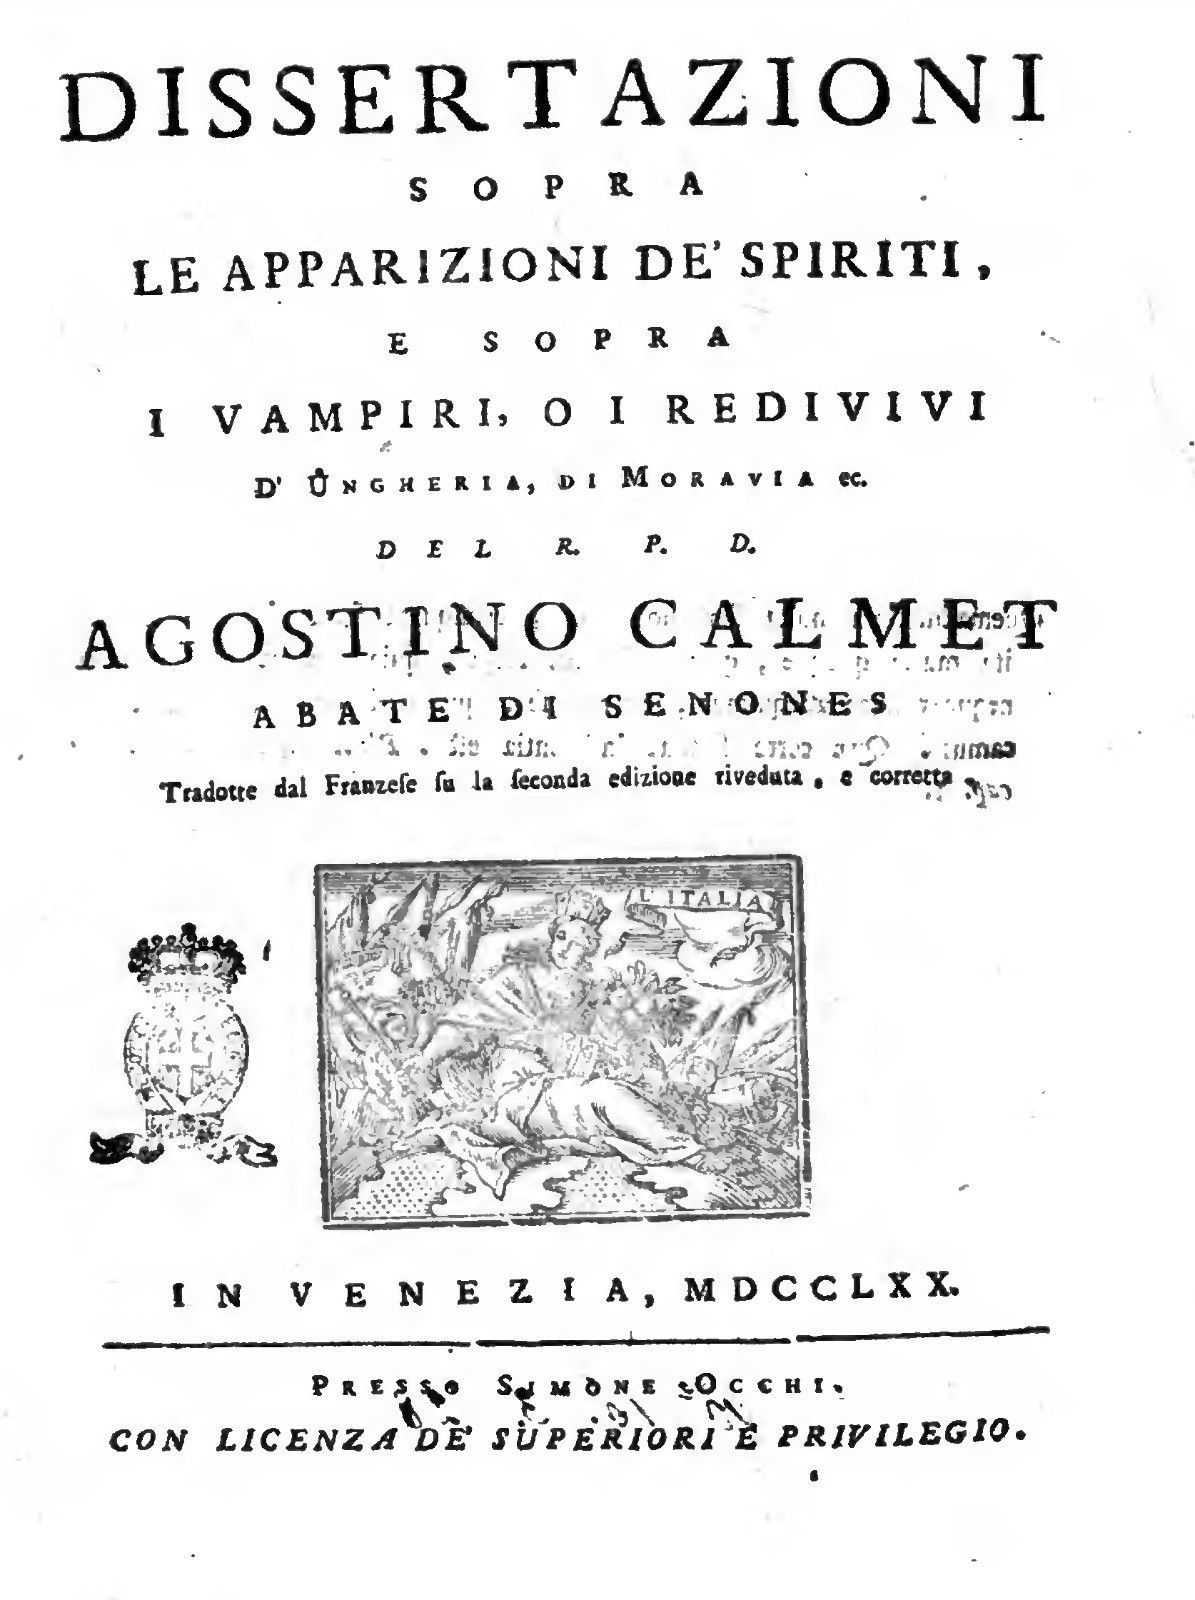 “Dissertazioni sopra le apparizioni de’ spiriti e vampiri” di Augustin Calmet in bancarella